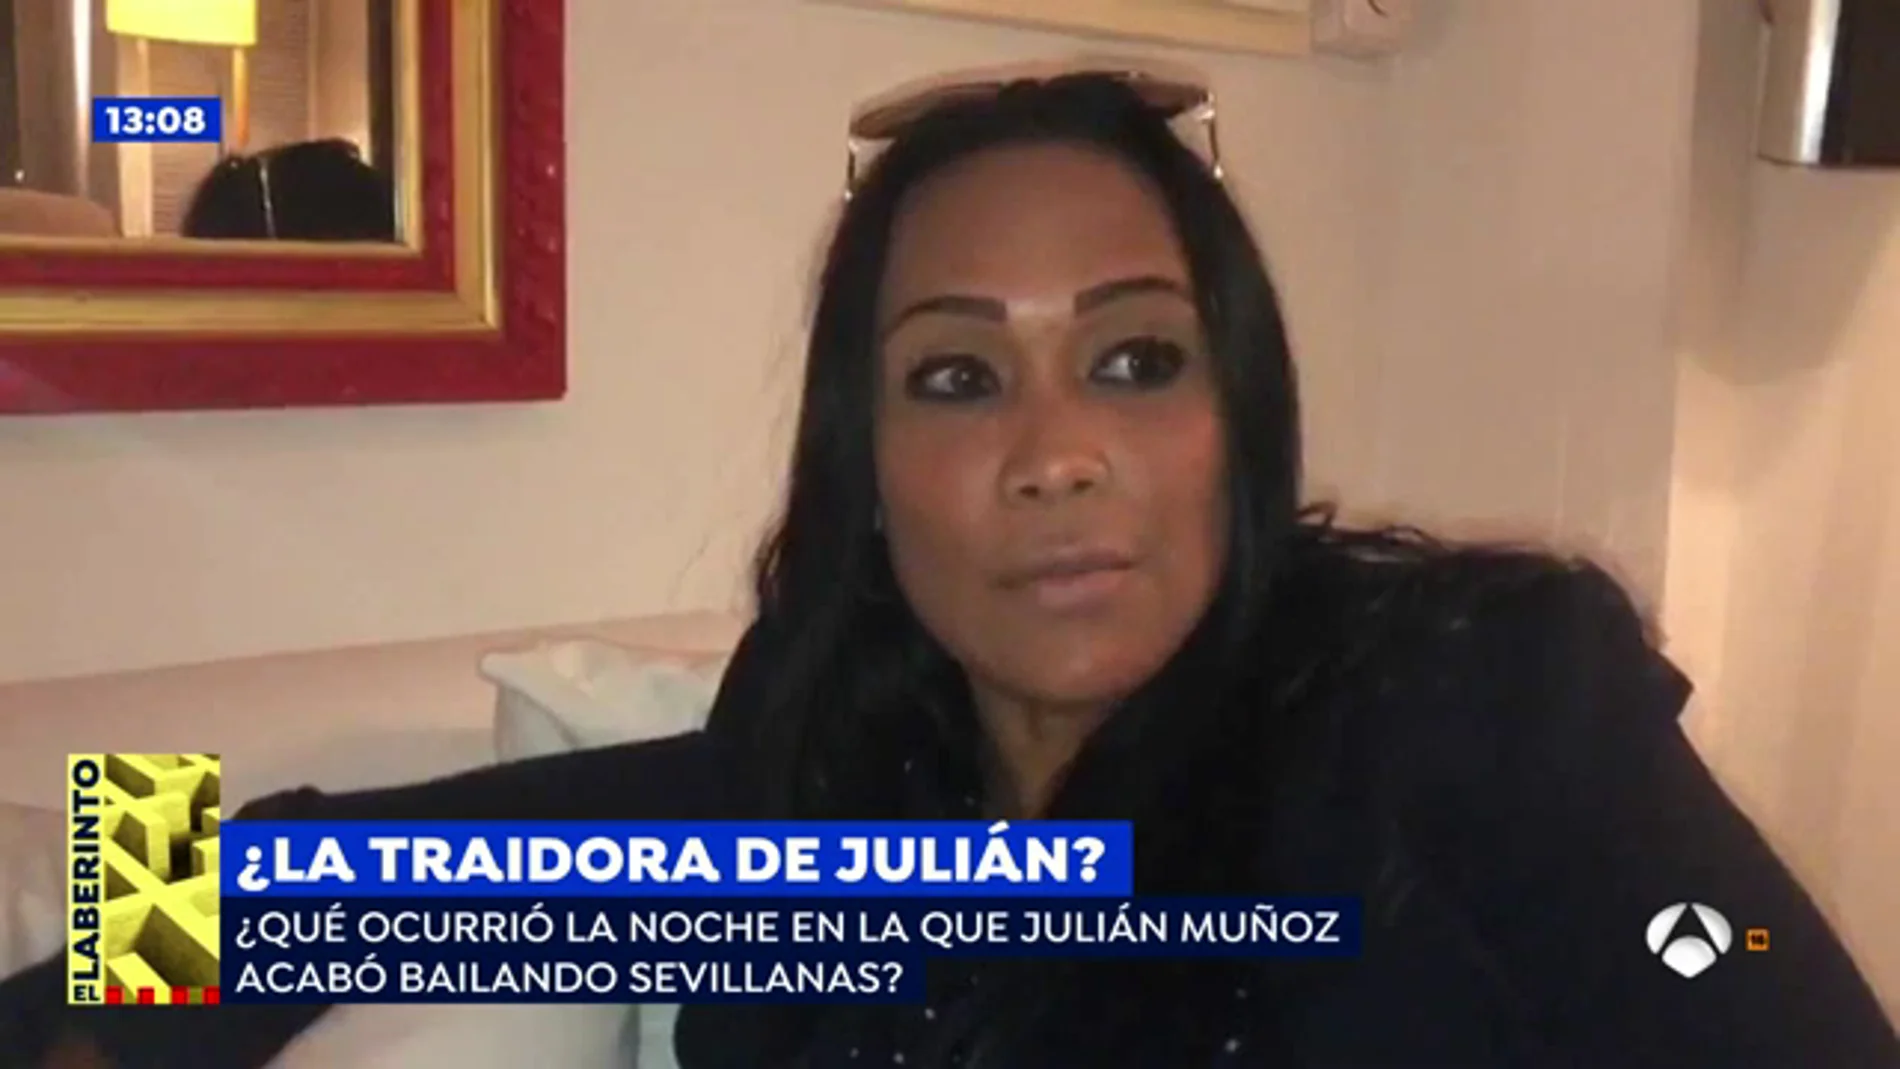 Liz, la acusada de traicionar a Julián Muñoz sobre la grabación bailando sevillanas: “Me siento indignada”